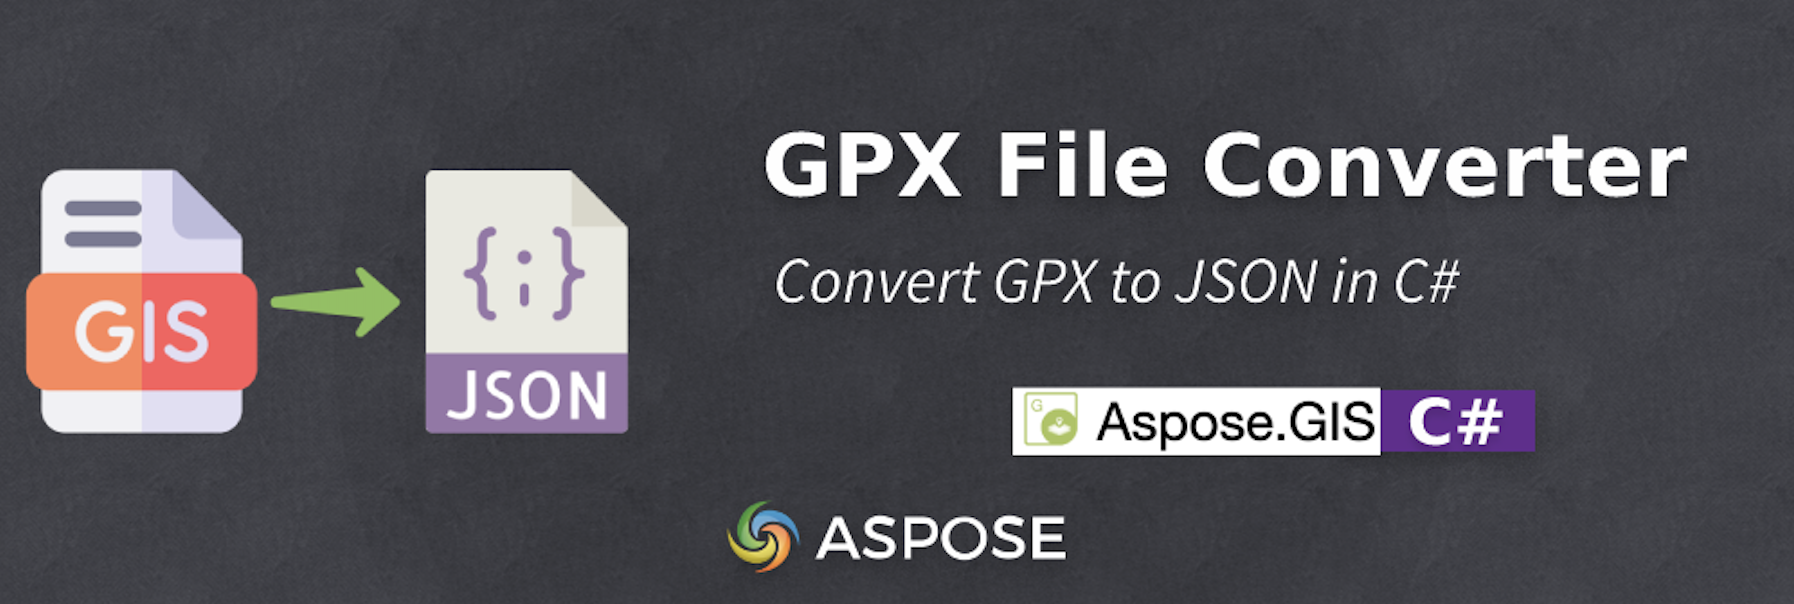 Konwertuj GPX na JSON w C# - konwerter plików GPX